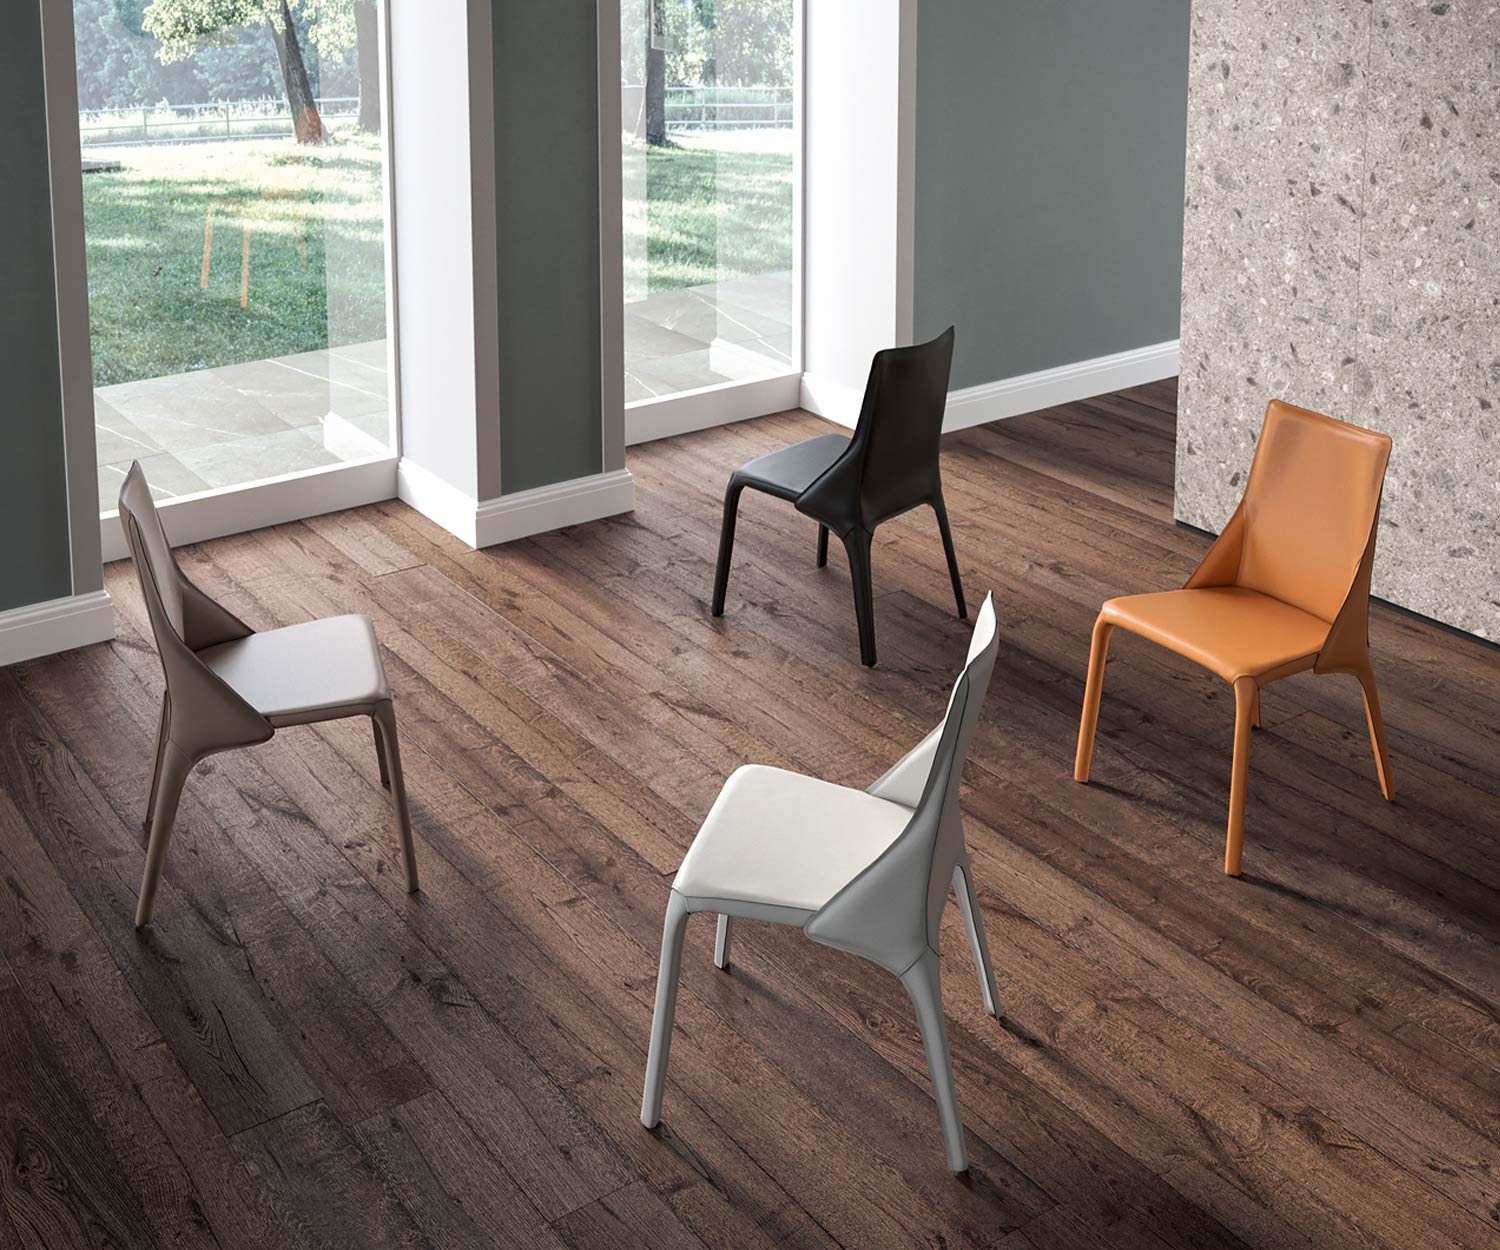 Moderne design leren stoel vier leren stoelen geplaatst in een kamer op een houten vloer